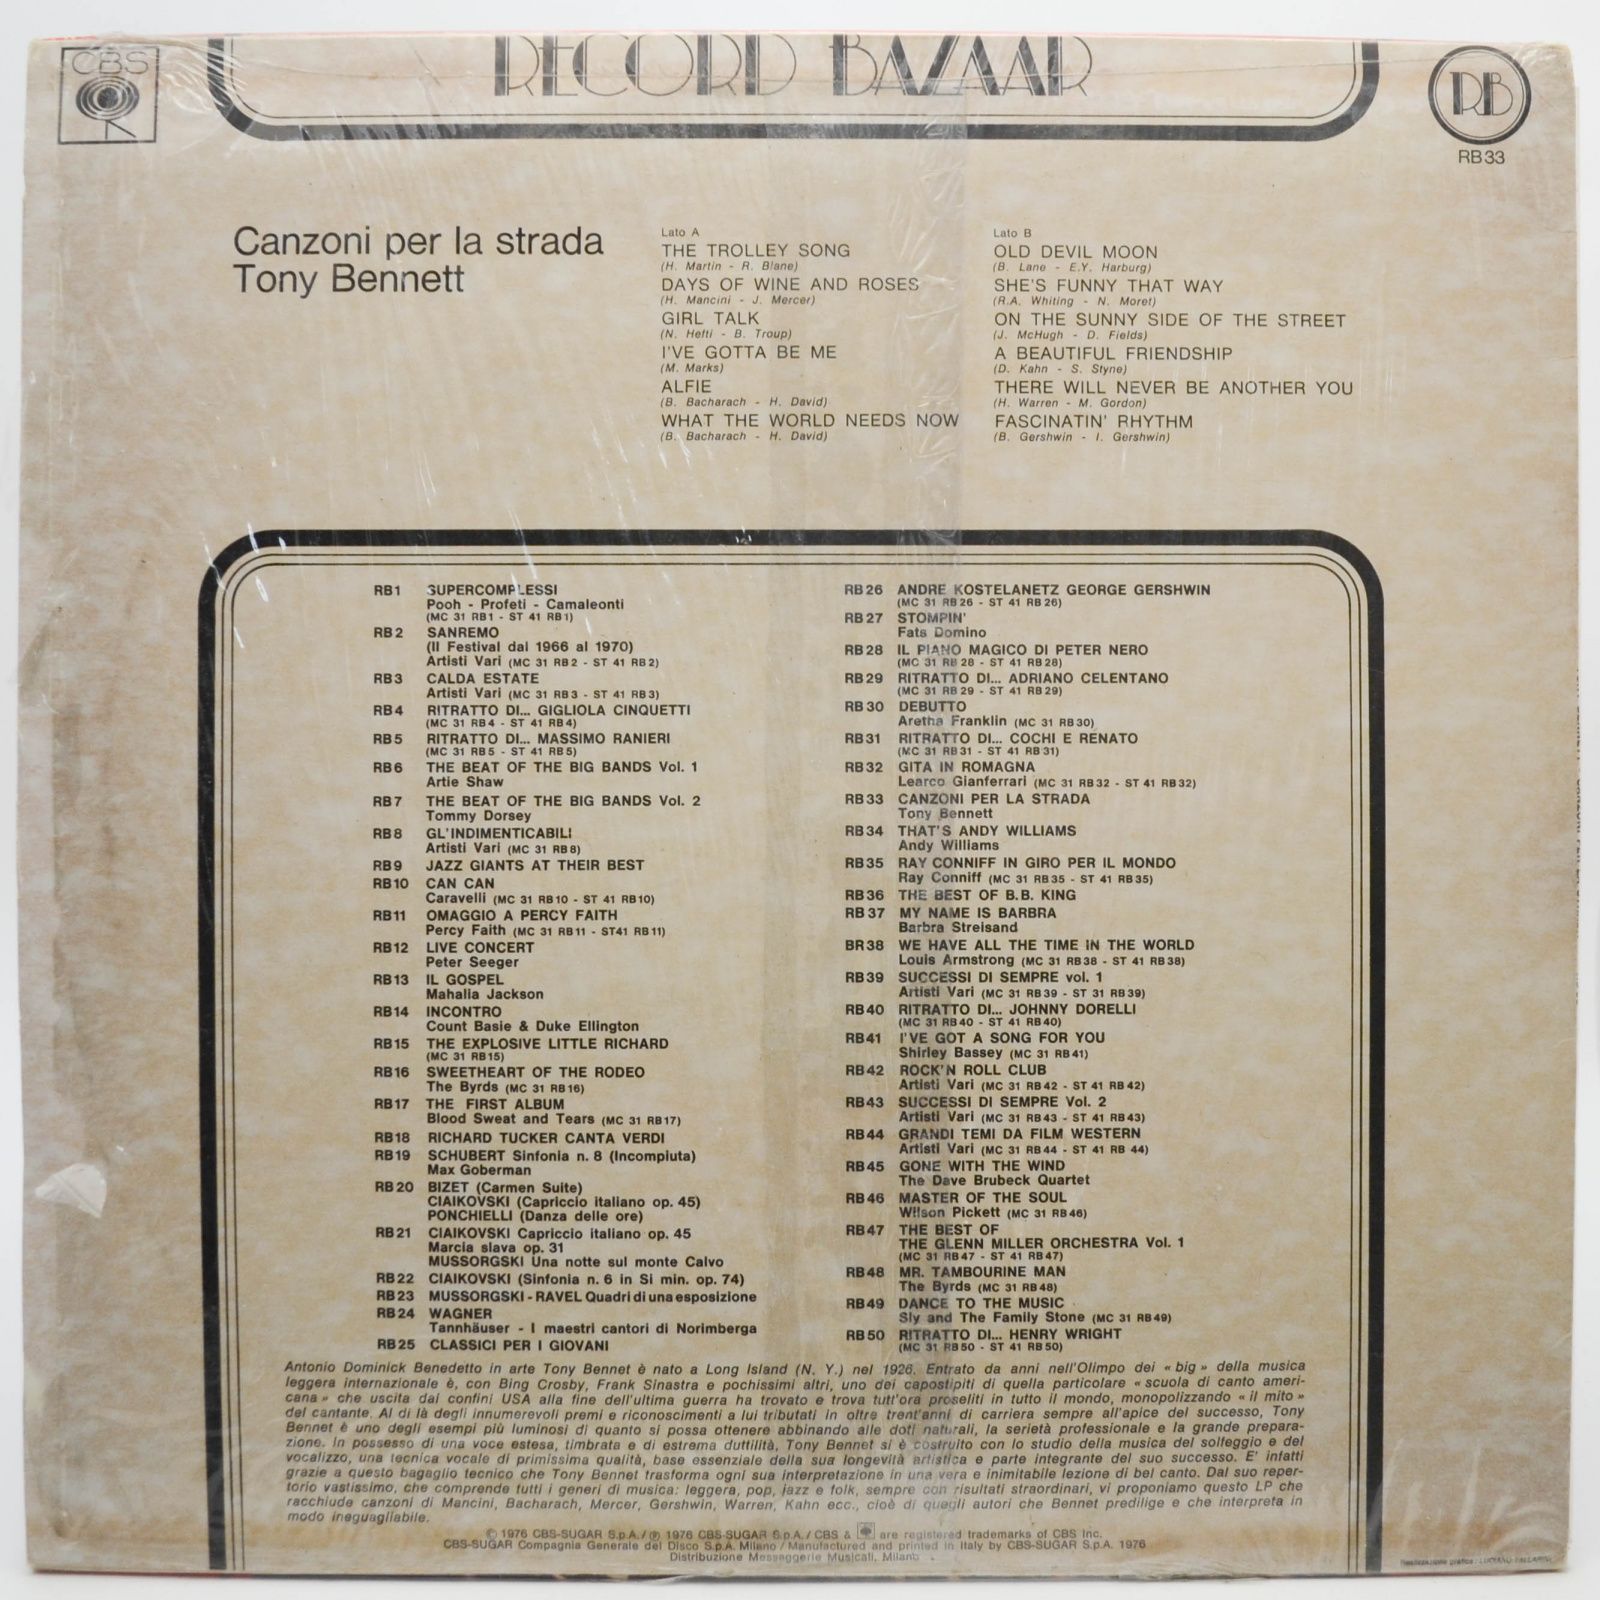 Tony Bennett — Canzoni Per La Strada, 1976